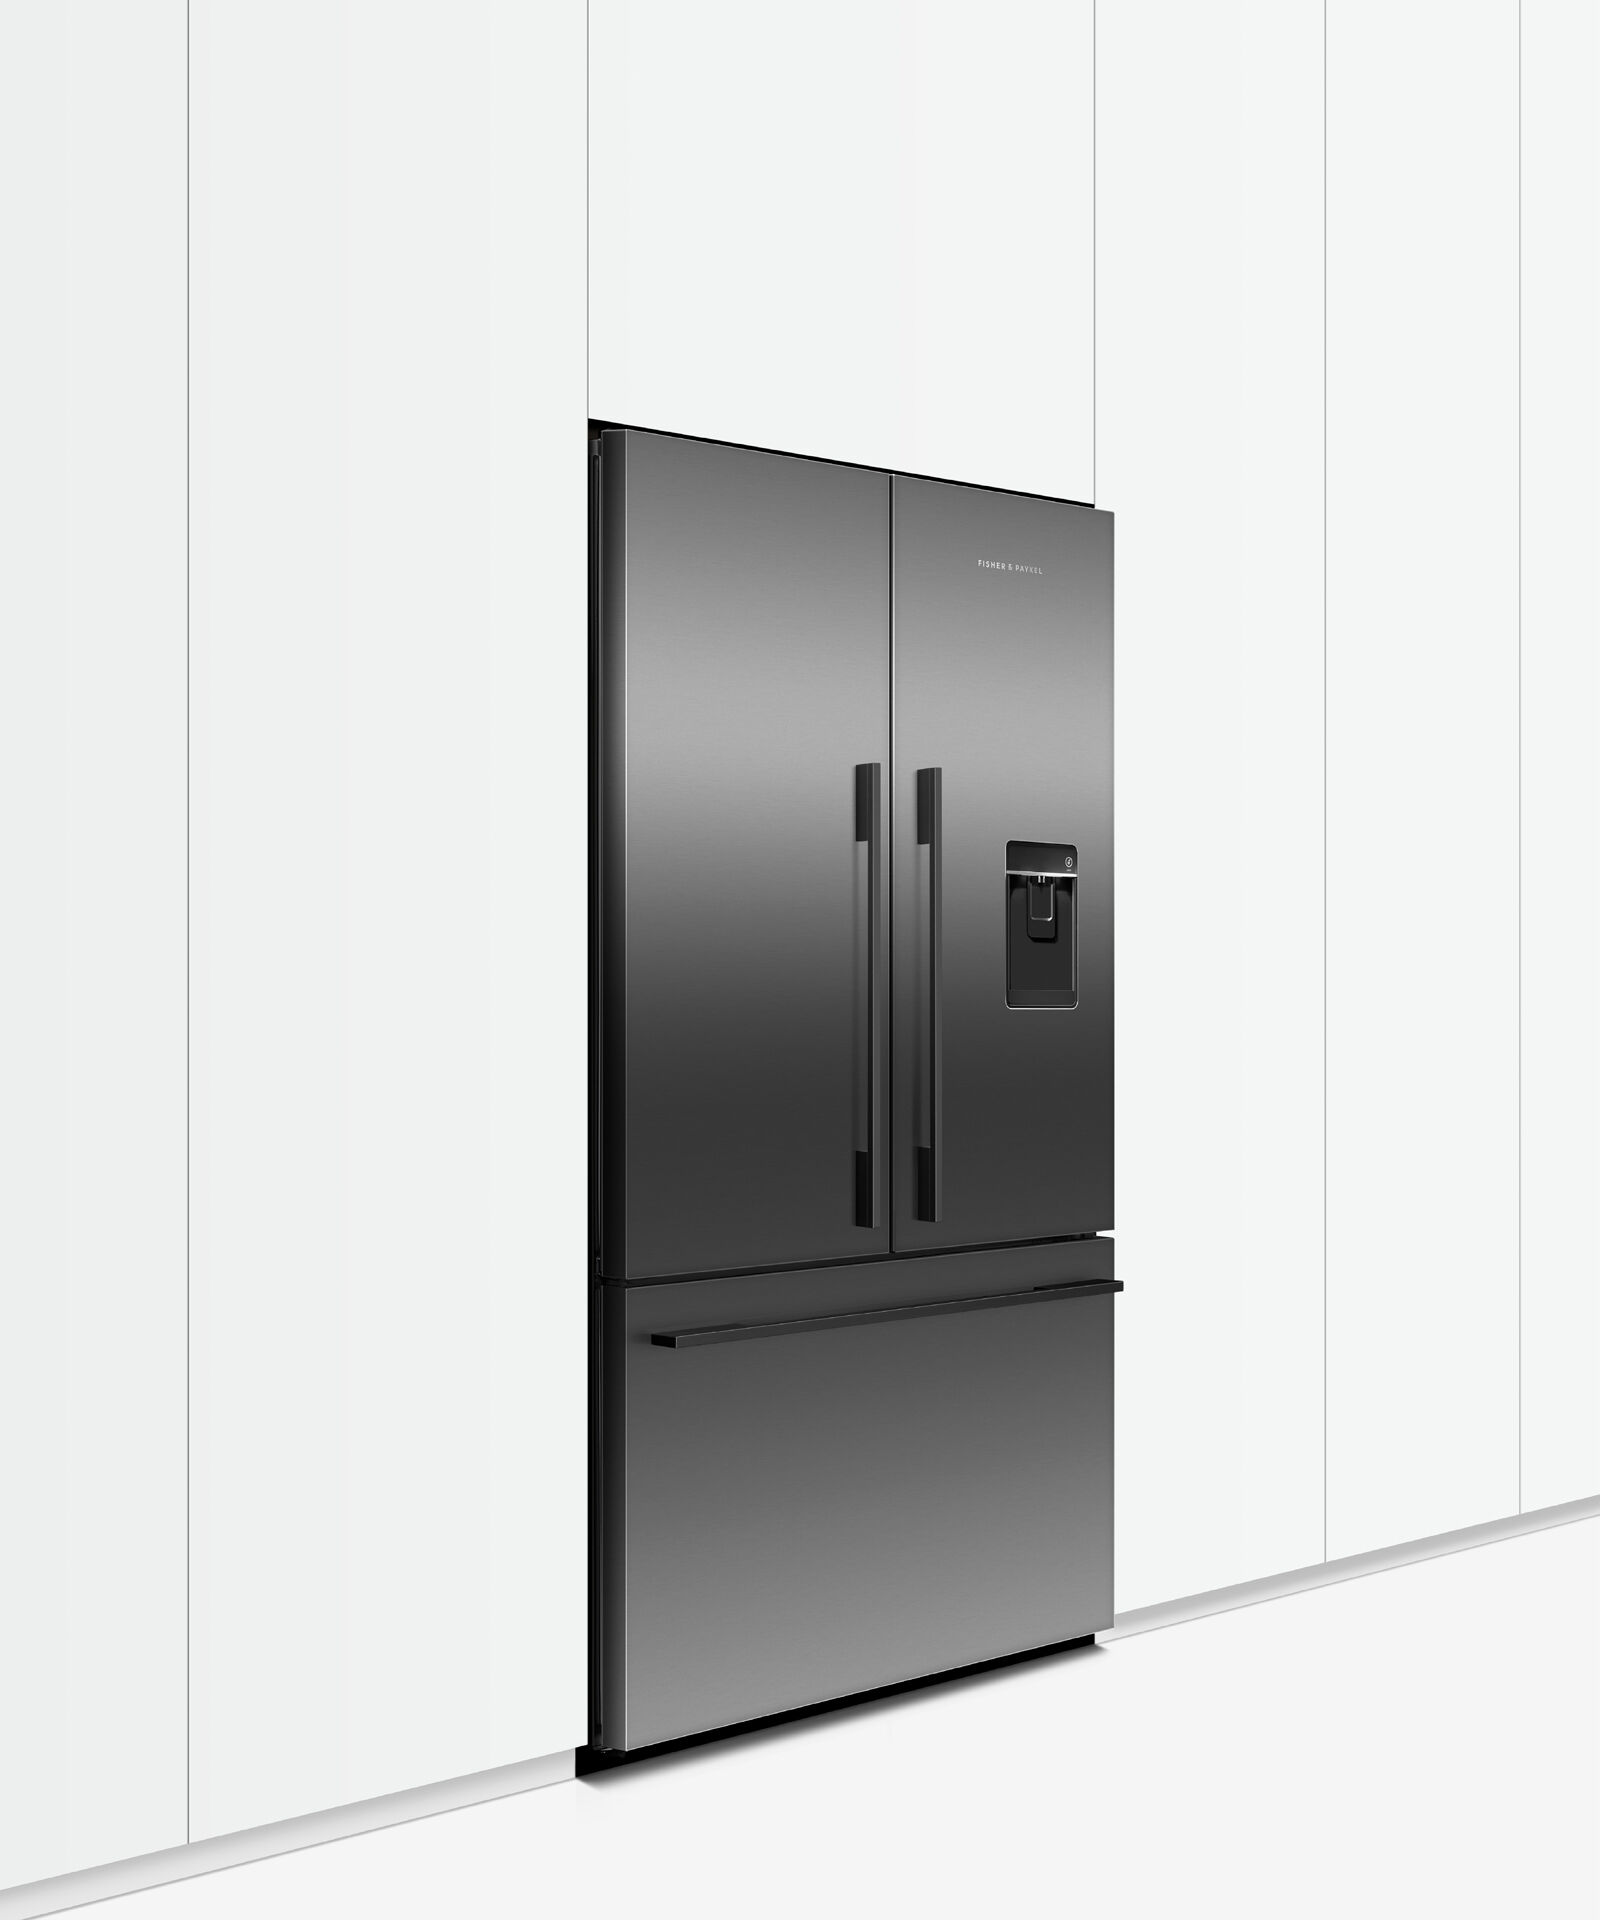 黑色法式對開門雪櫃, 90cm, 自動製冰和冰水, gallery image 6.0